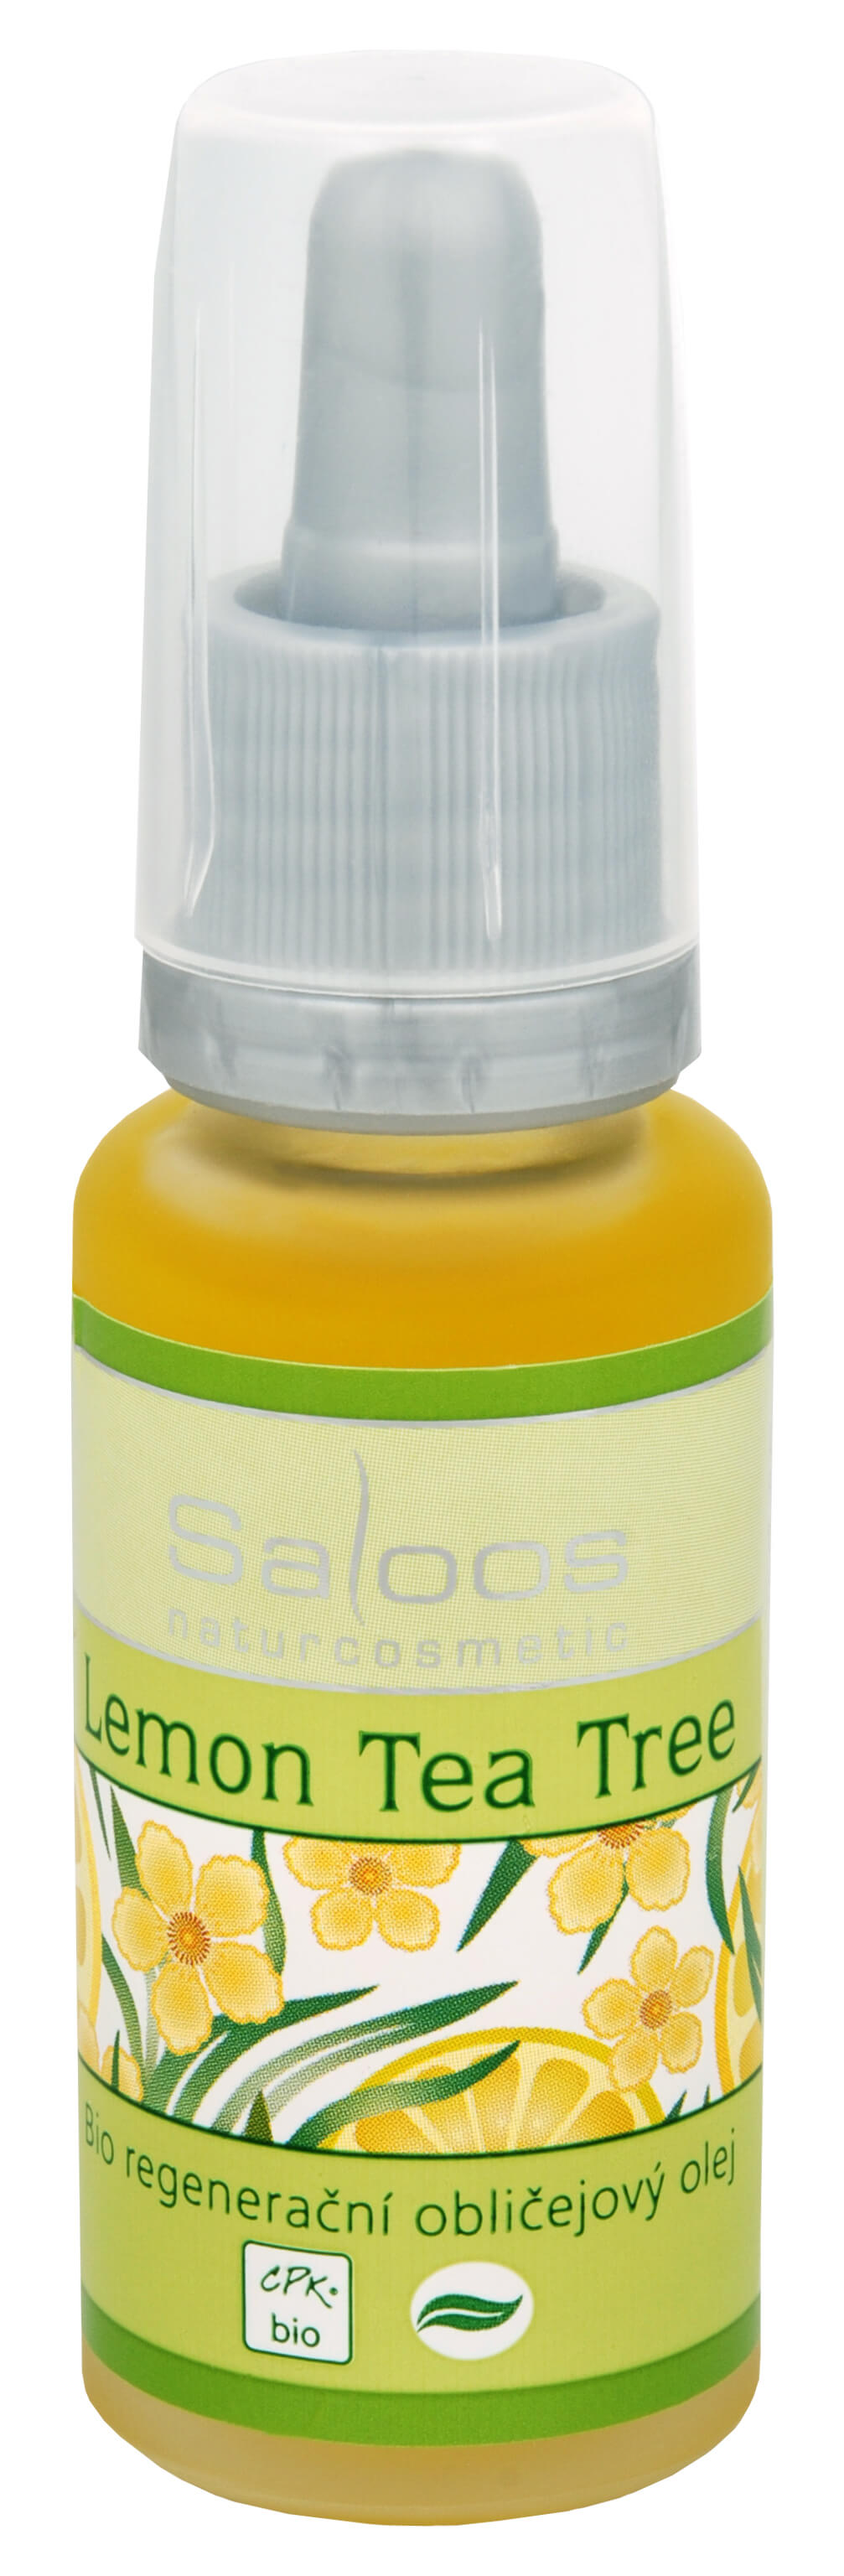 Saloos Bio regeneračný pleťový olej - Lemon tea tree 20 ml + 2 mesiace na vrátenie tovaru